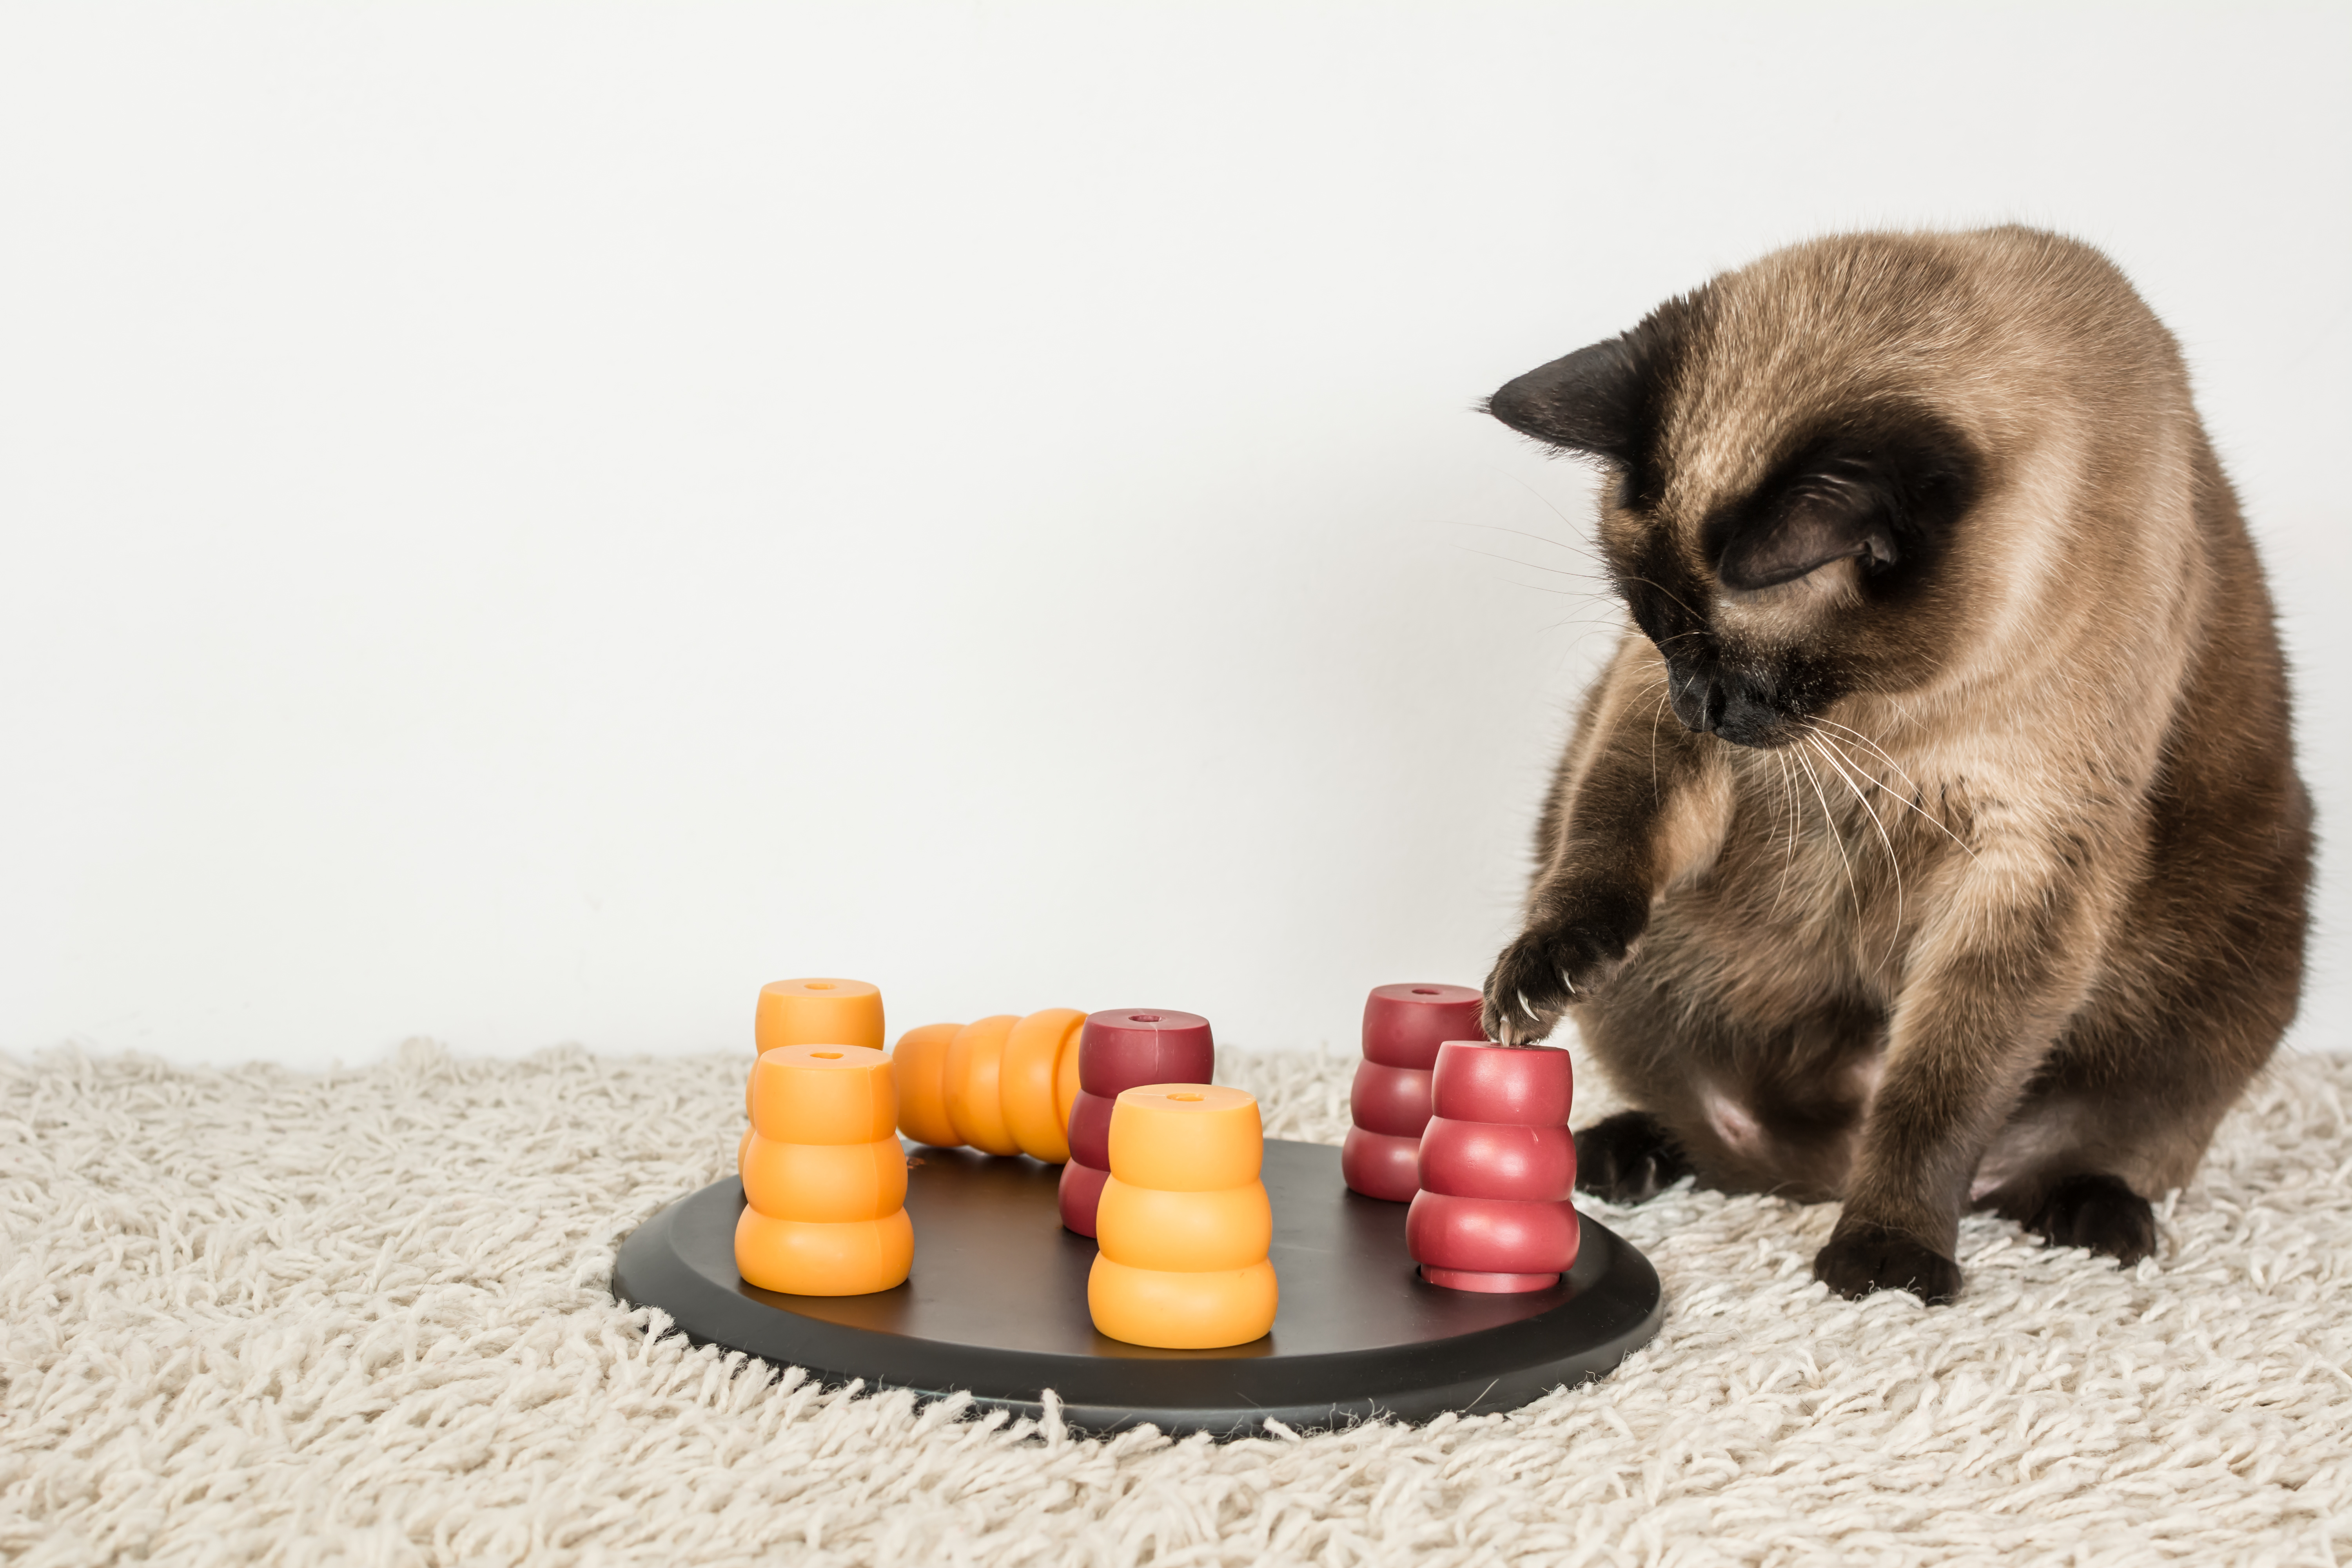 jouet intelligent pour chat